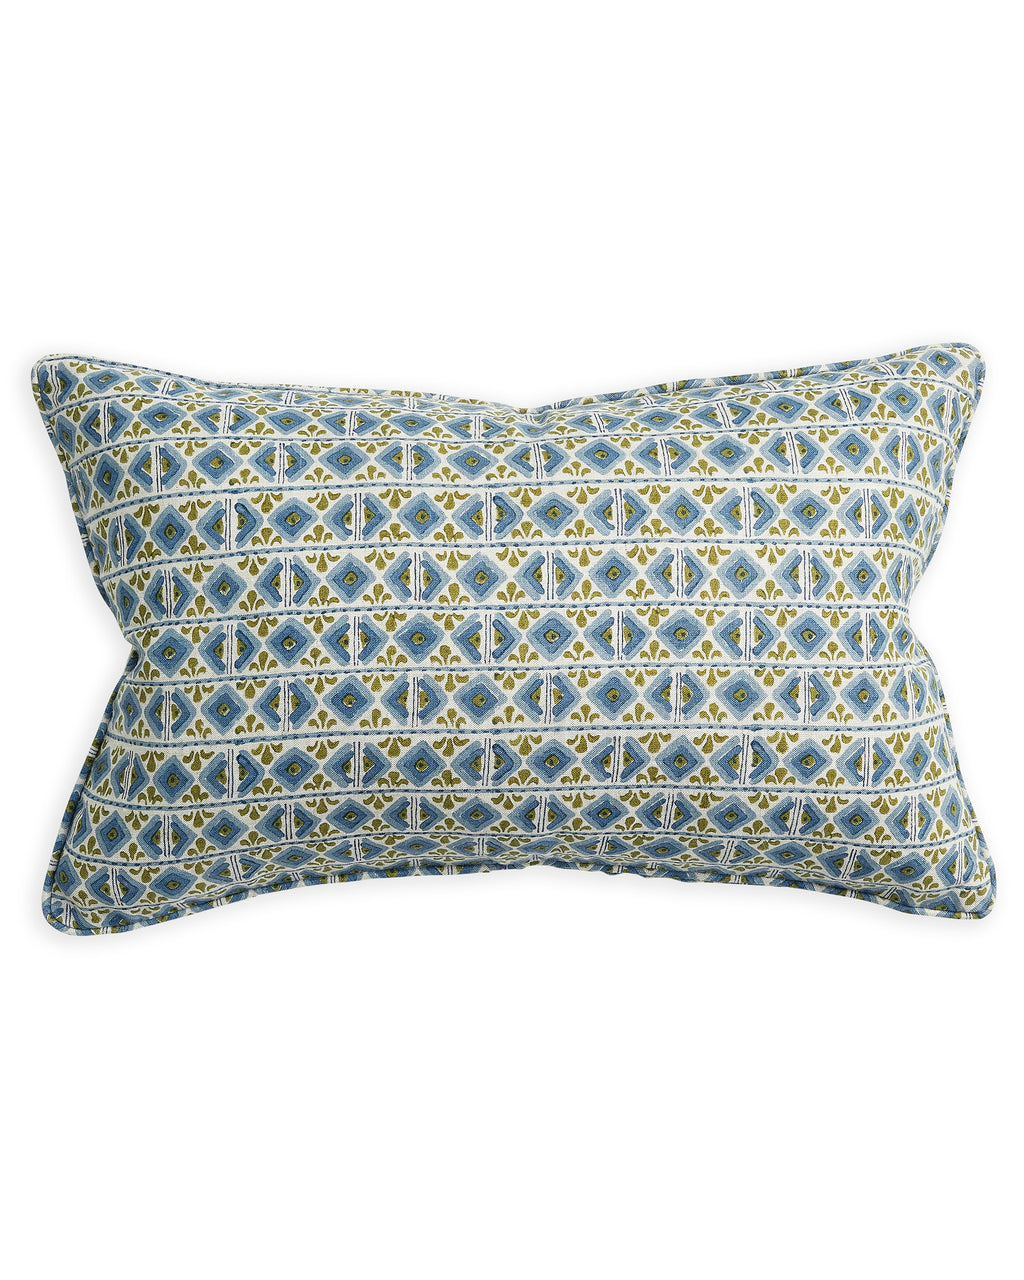 Ishtar Moss Azure linen cushion 35x55cm